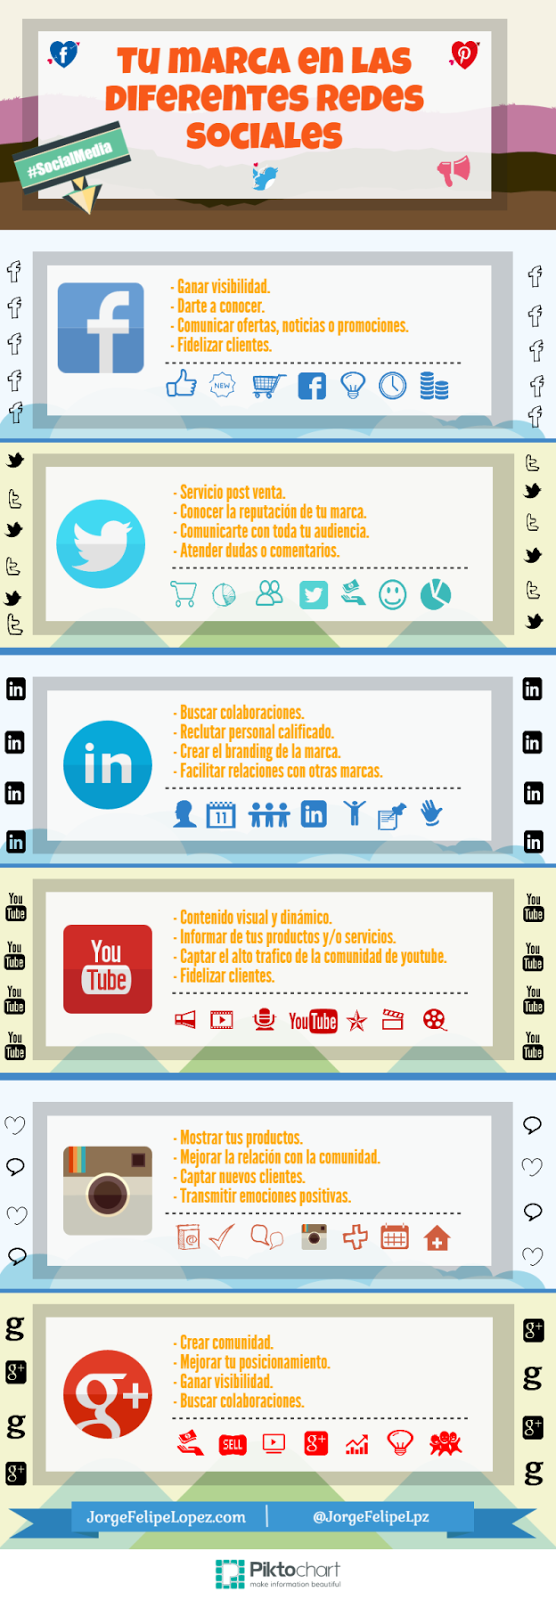 Infografía tu marca en las diferentes redes sociales.